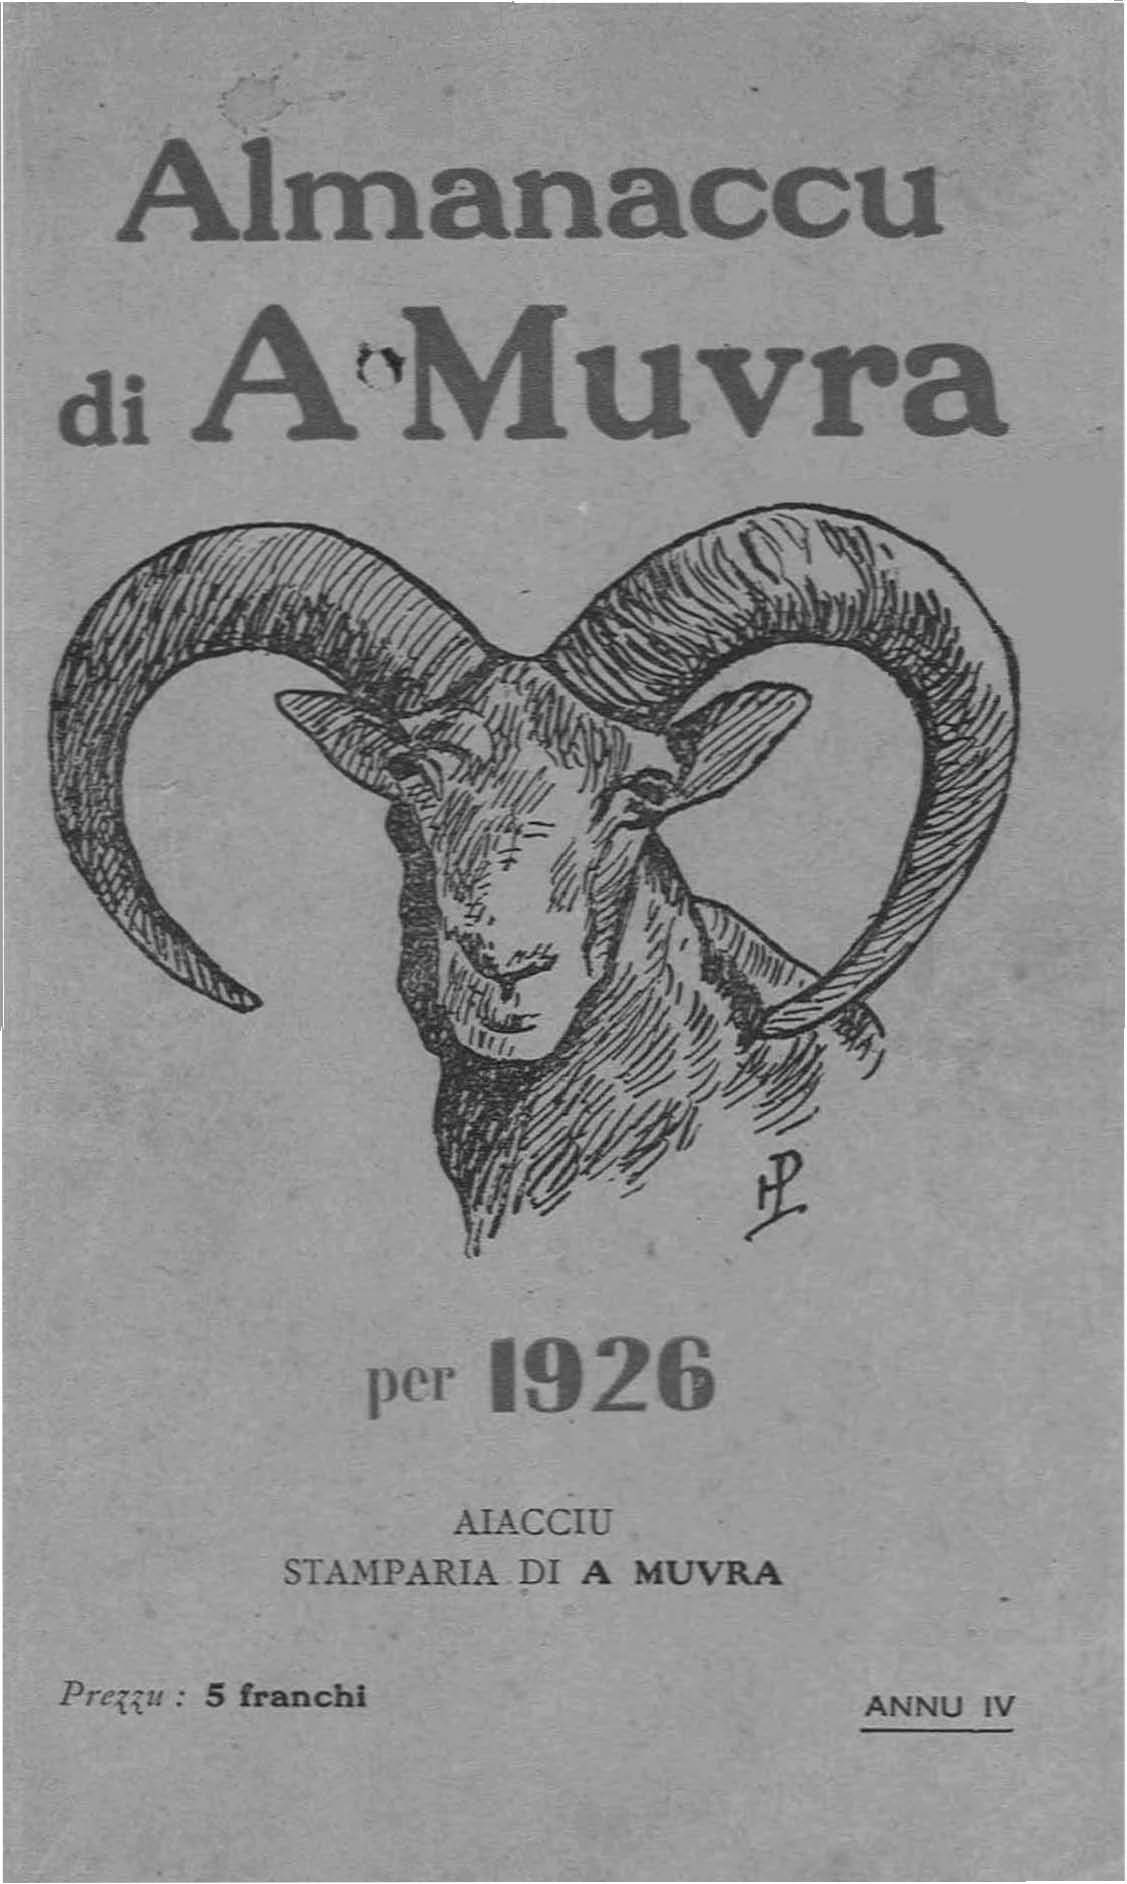 Almanaccu di a Muvra 1926